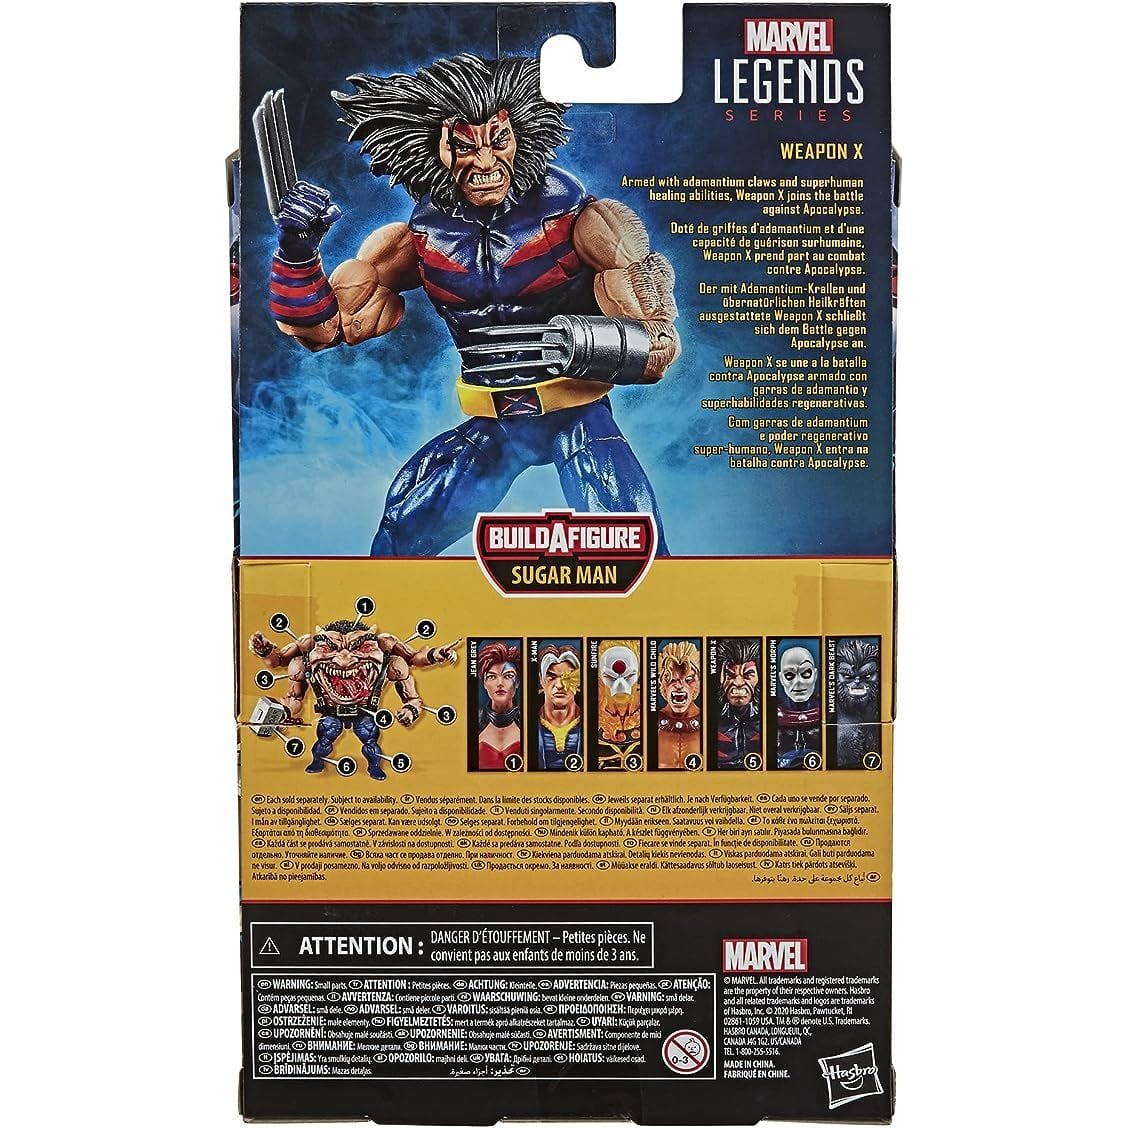 Marvel Legends X-Men Weapon X 6 Inch Action Figure - Redshift7toys.com